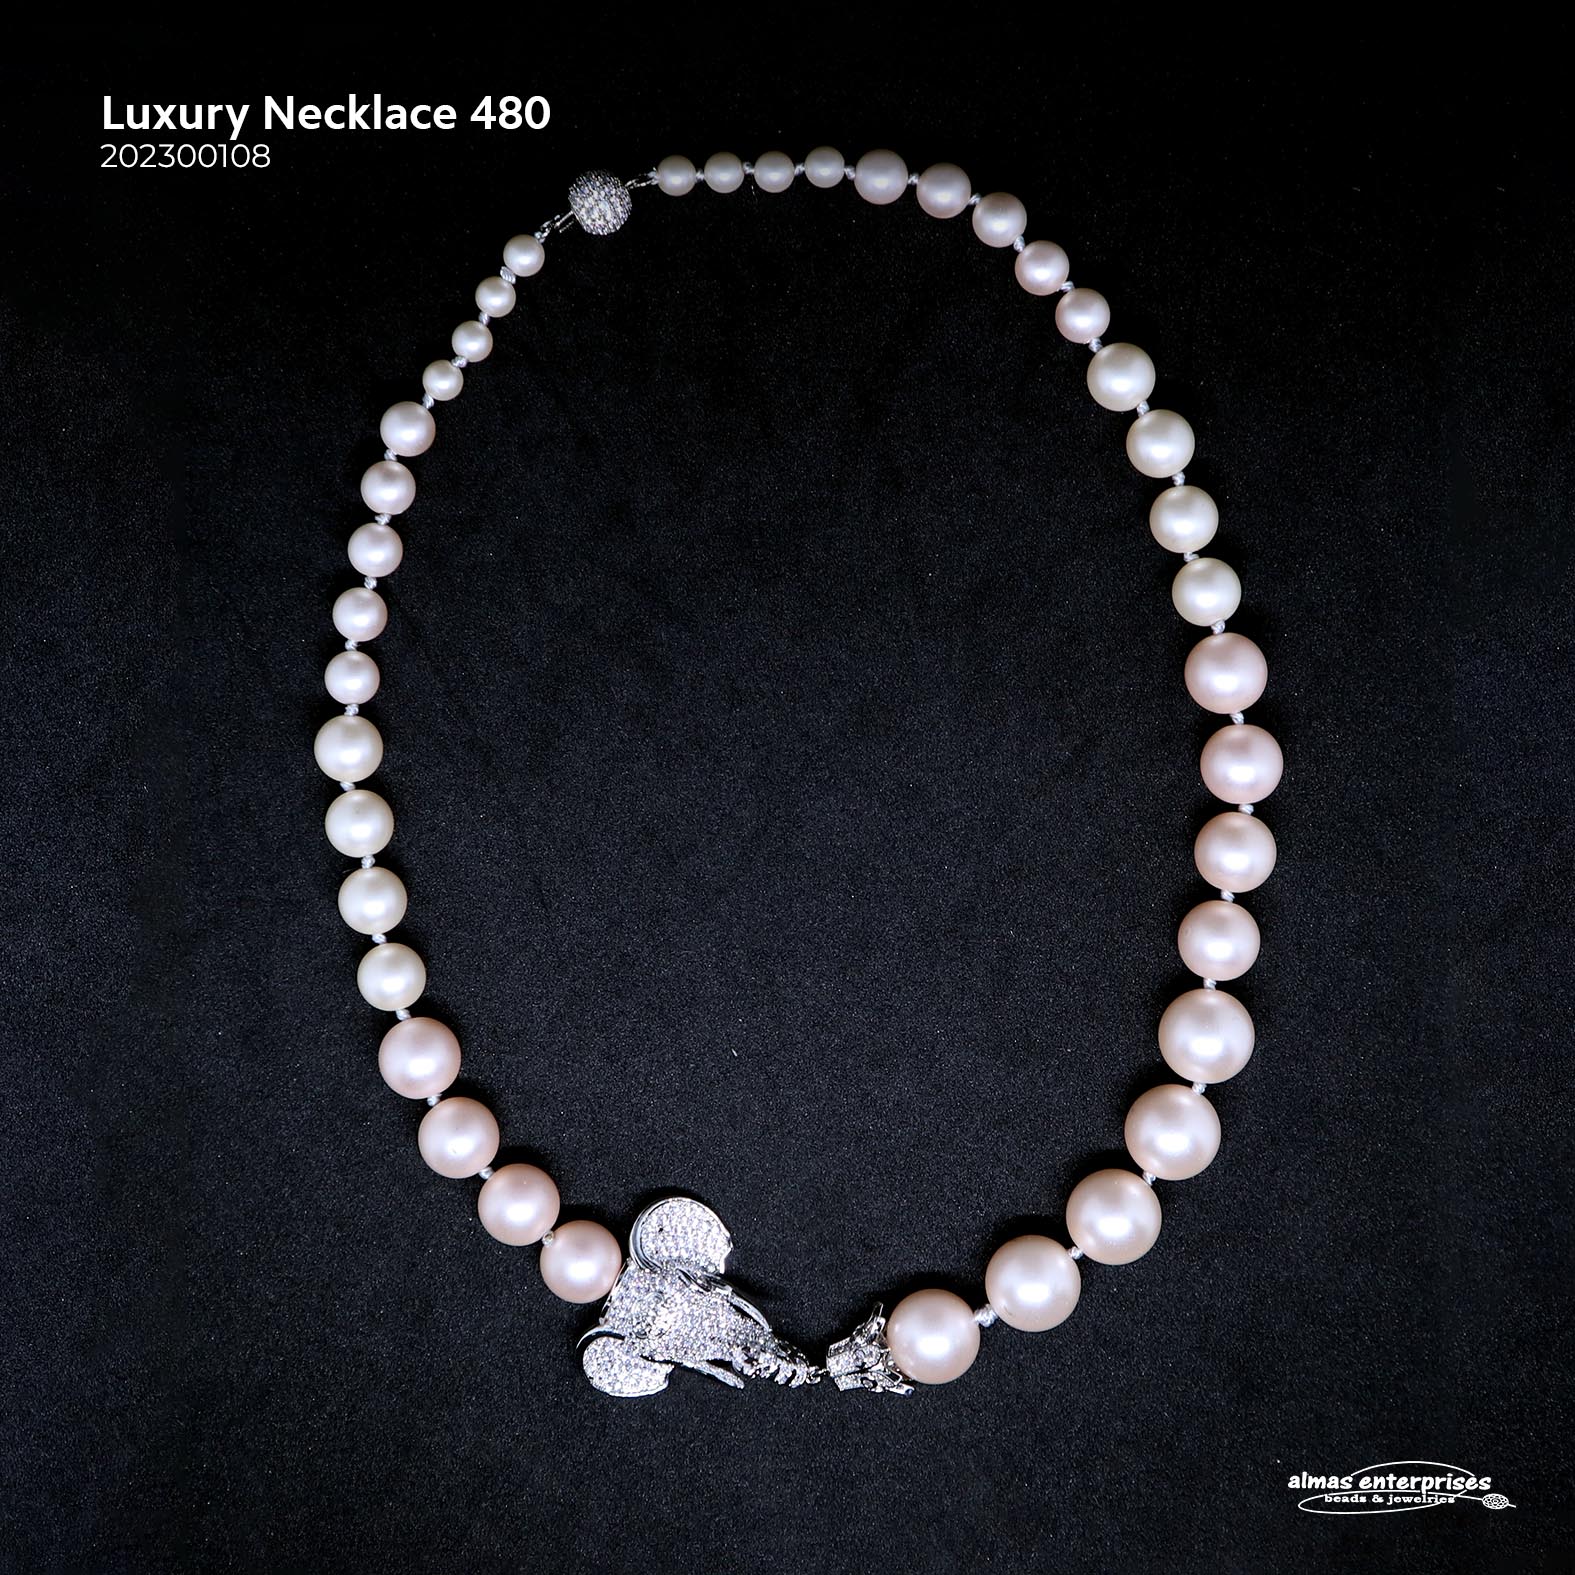 Luxury Necklace 480